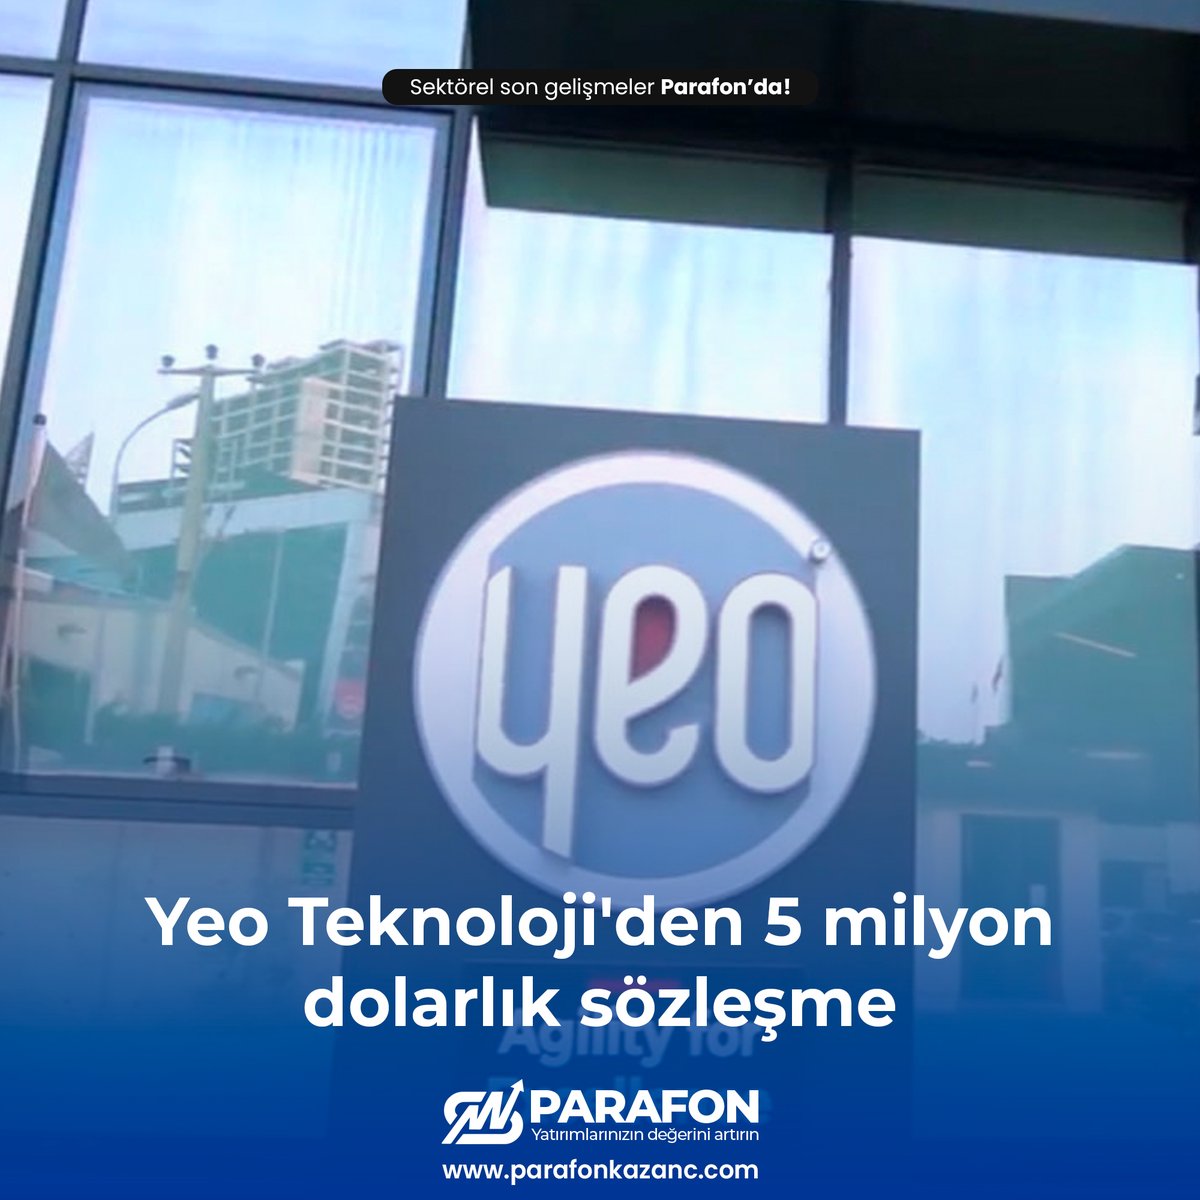 YEO Teknoloji (#YEOTK), bugün KAP'a yaptığı bildirimde Azerbaycan Cumhuriyeti'nde enerji sektöründe faaliyet gösteren bir müşterisi ile yaklaşık 5 milyon dolarlık bir anlaşma sağladığını açıkladı.